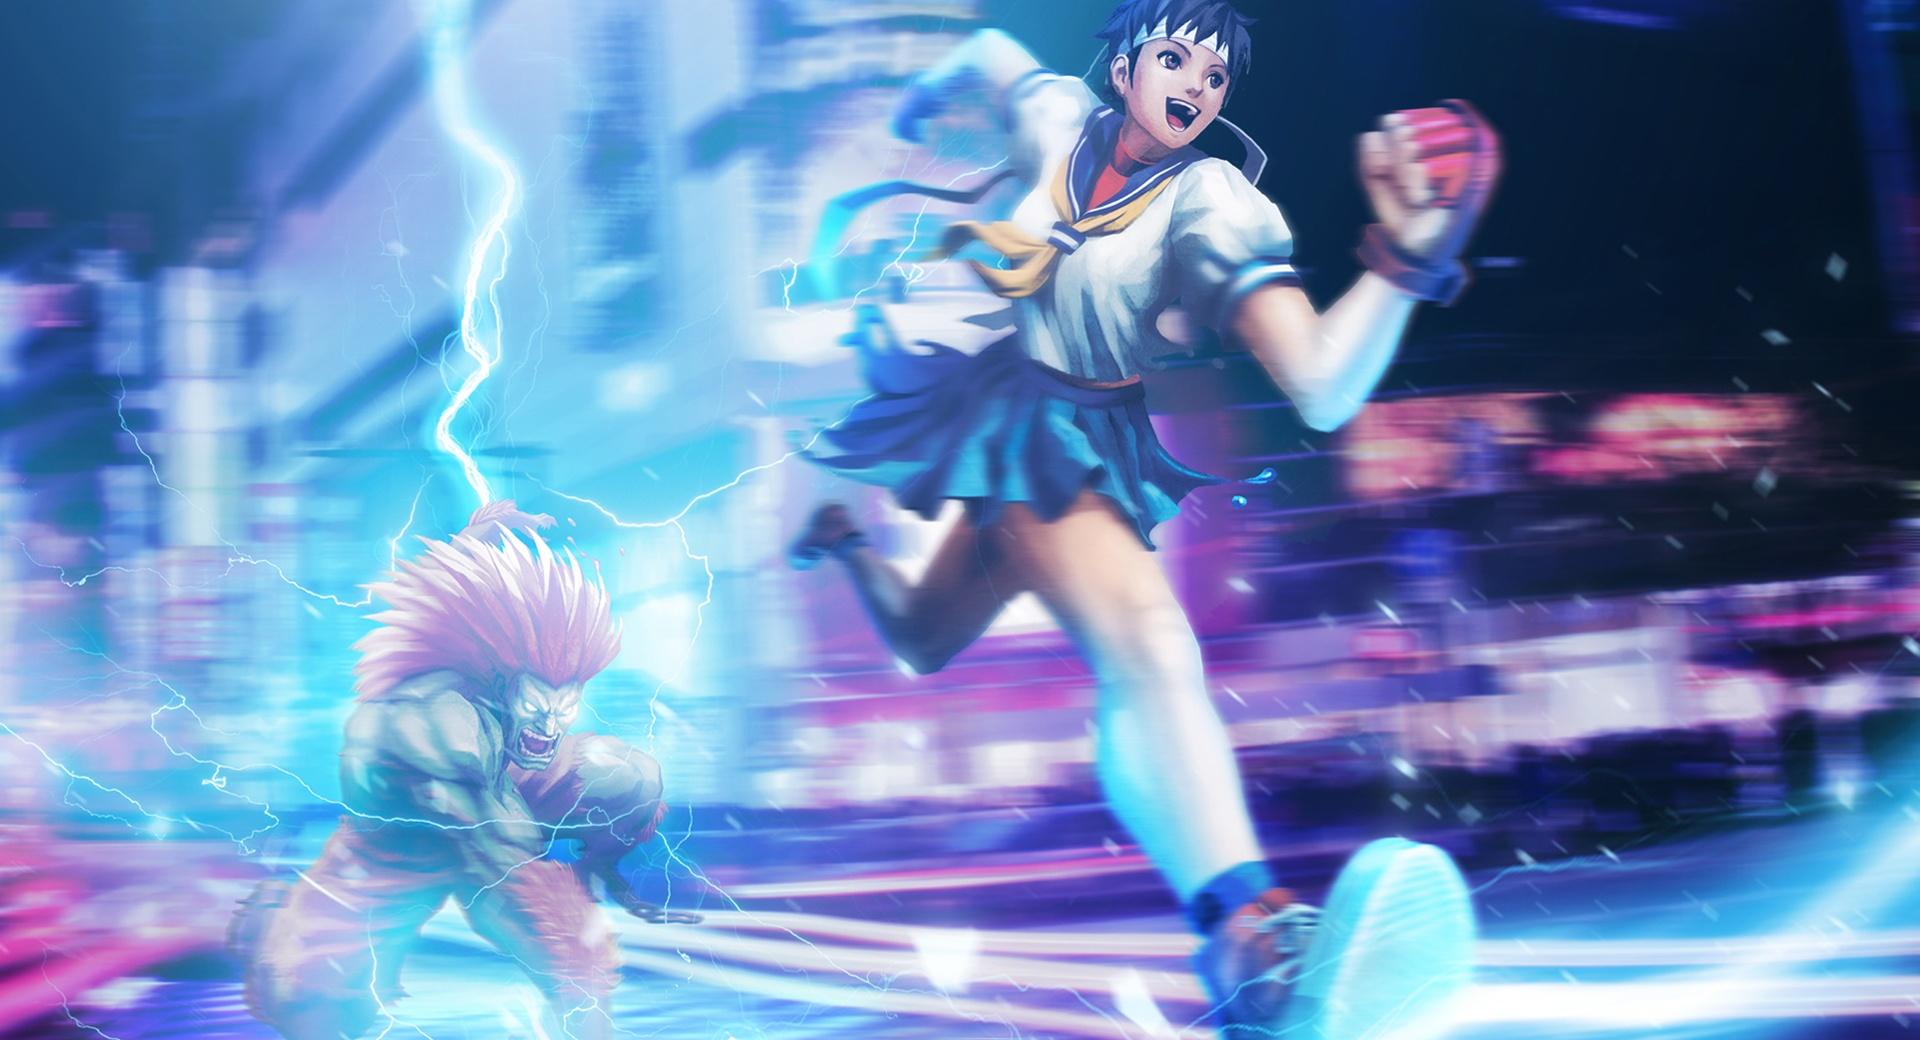 Street Fighter X Tekken - Sakura Blanka at 1024 x 1024 iPad size wallpapers HD quality